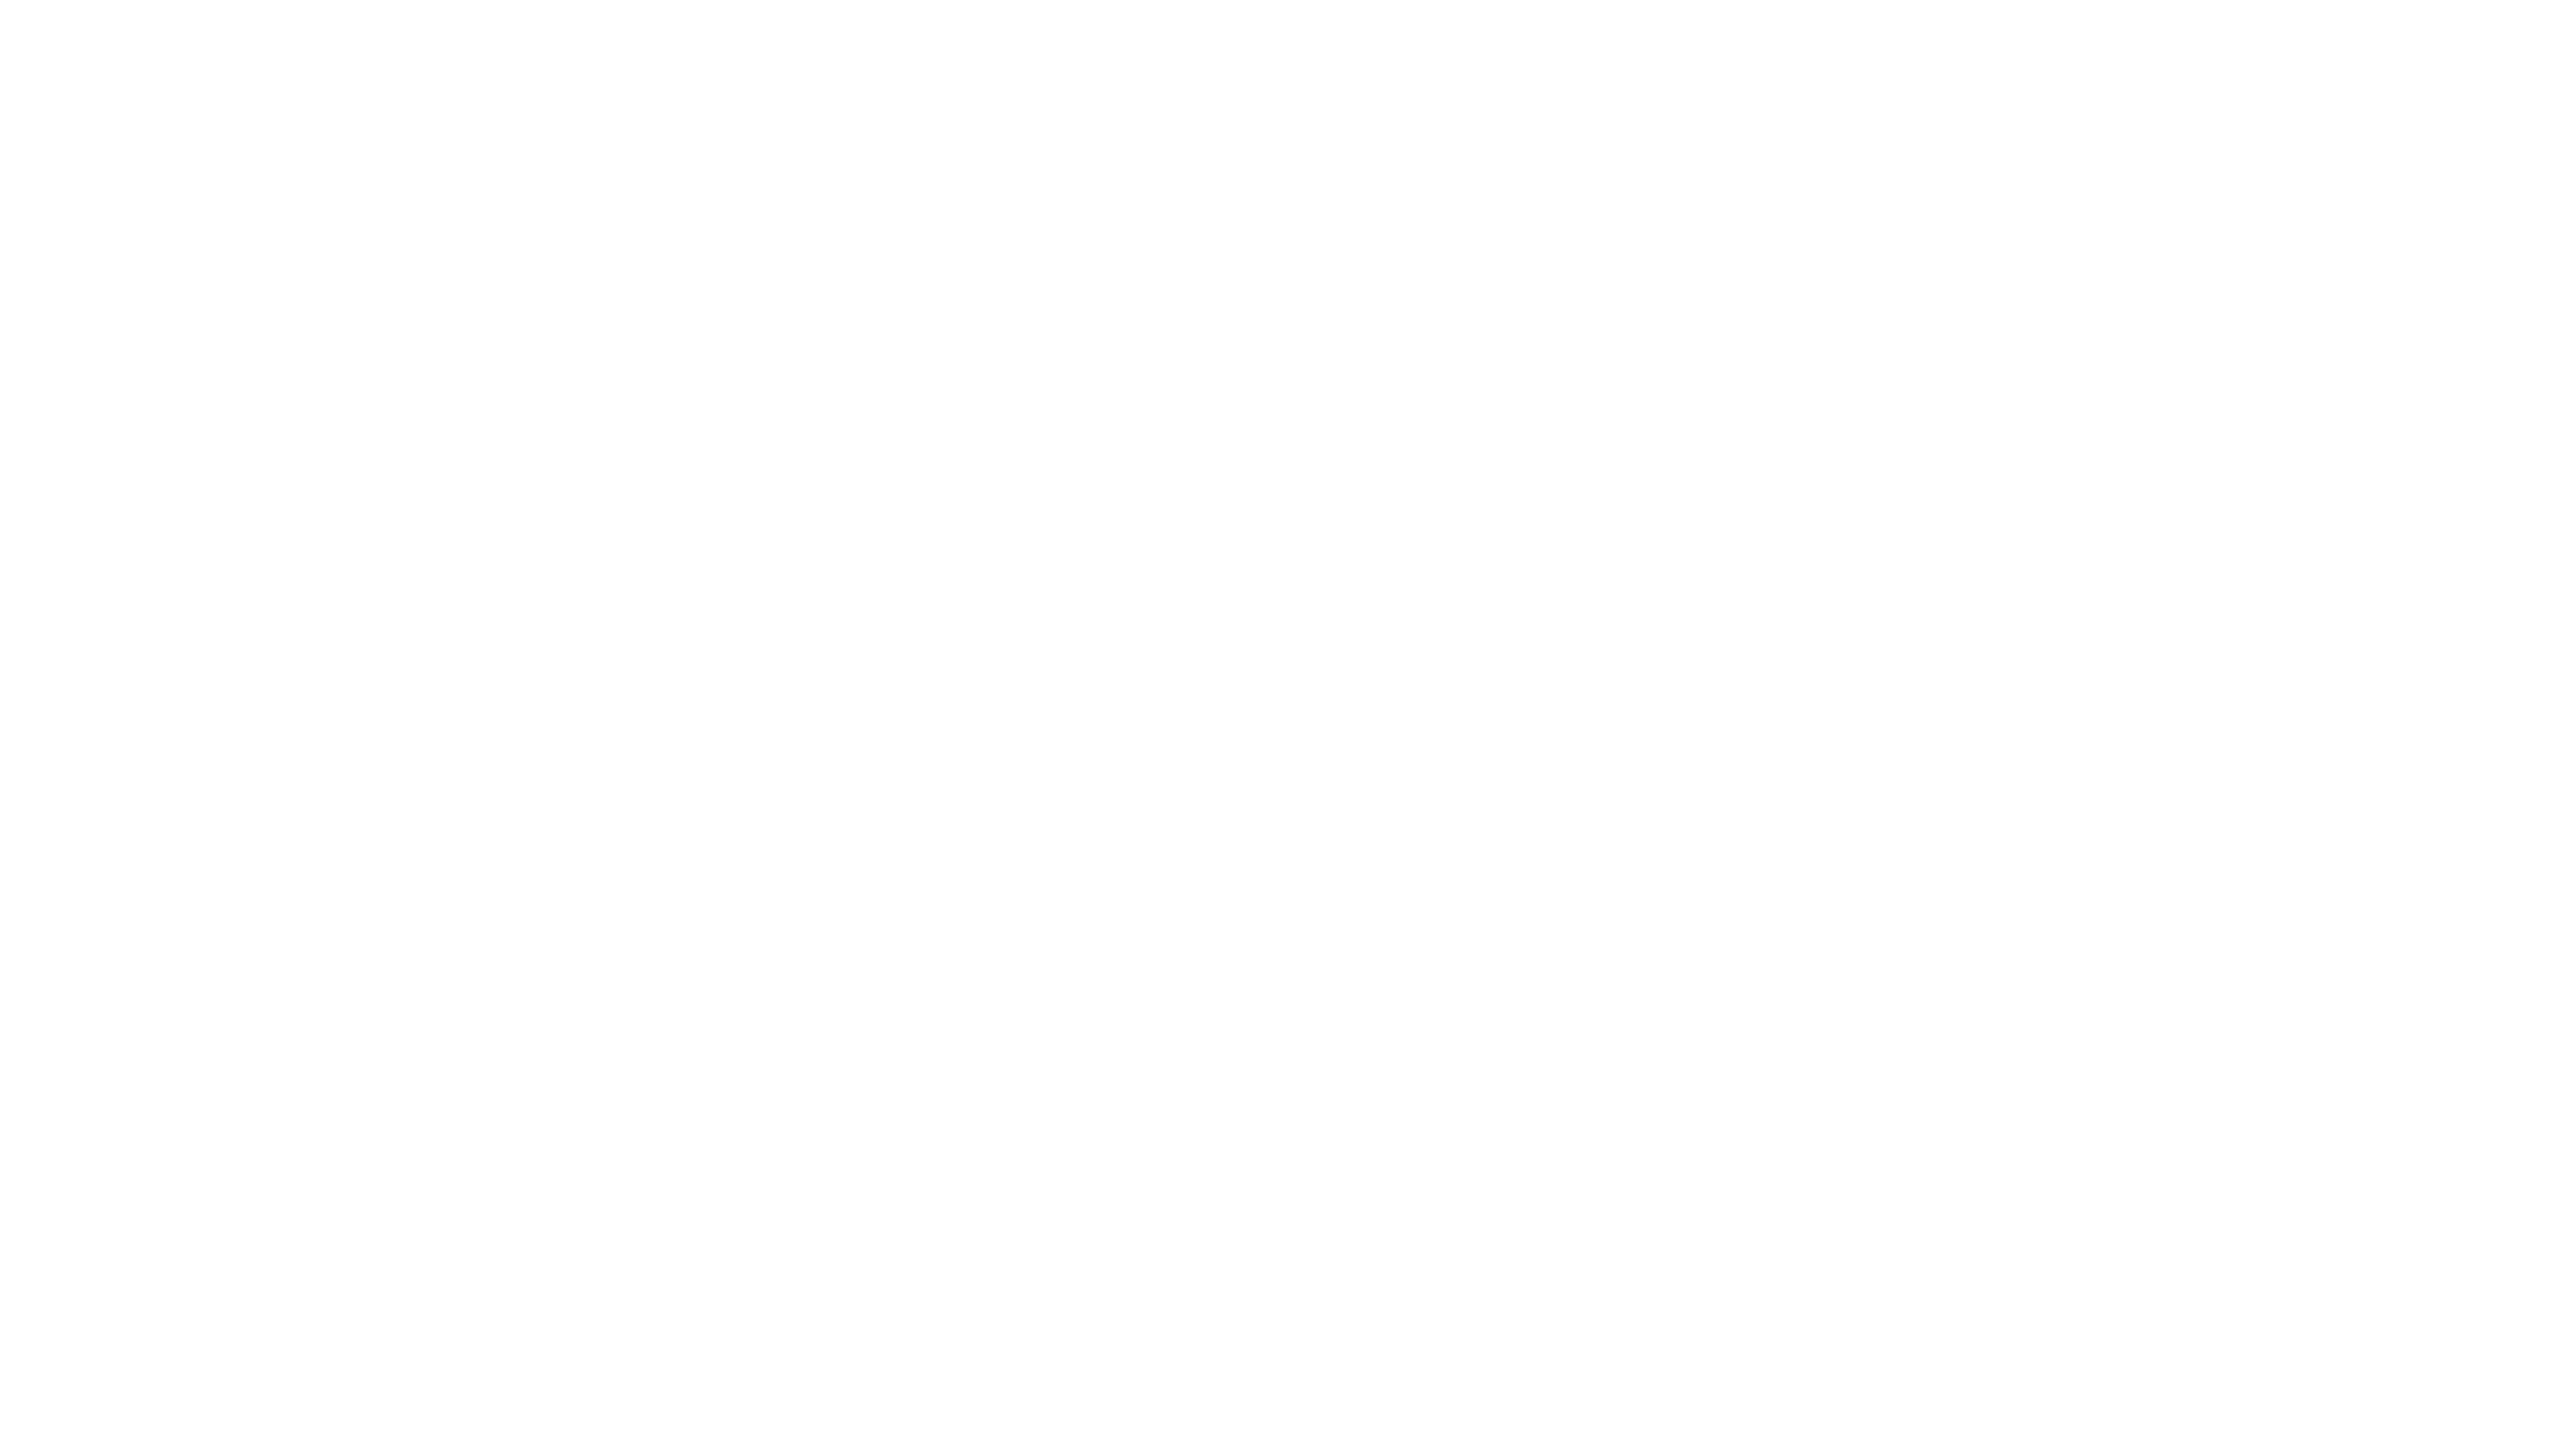 Eroi detective: la verità ad ogni costo